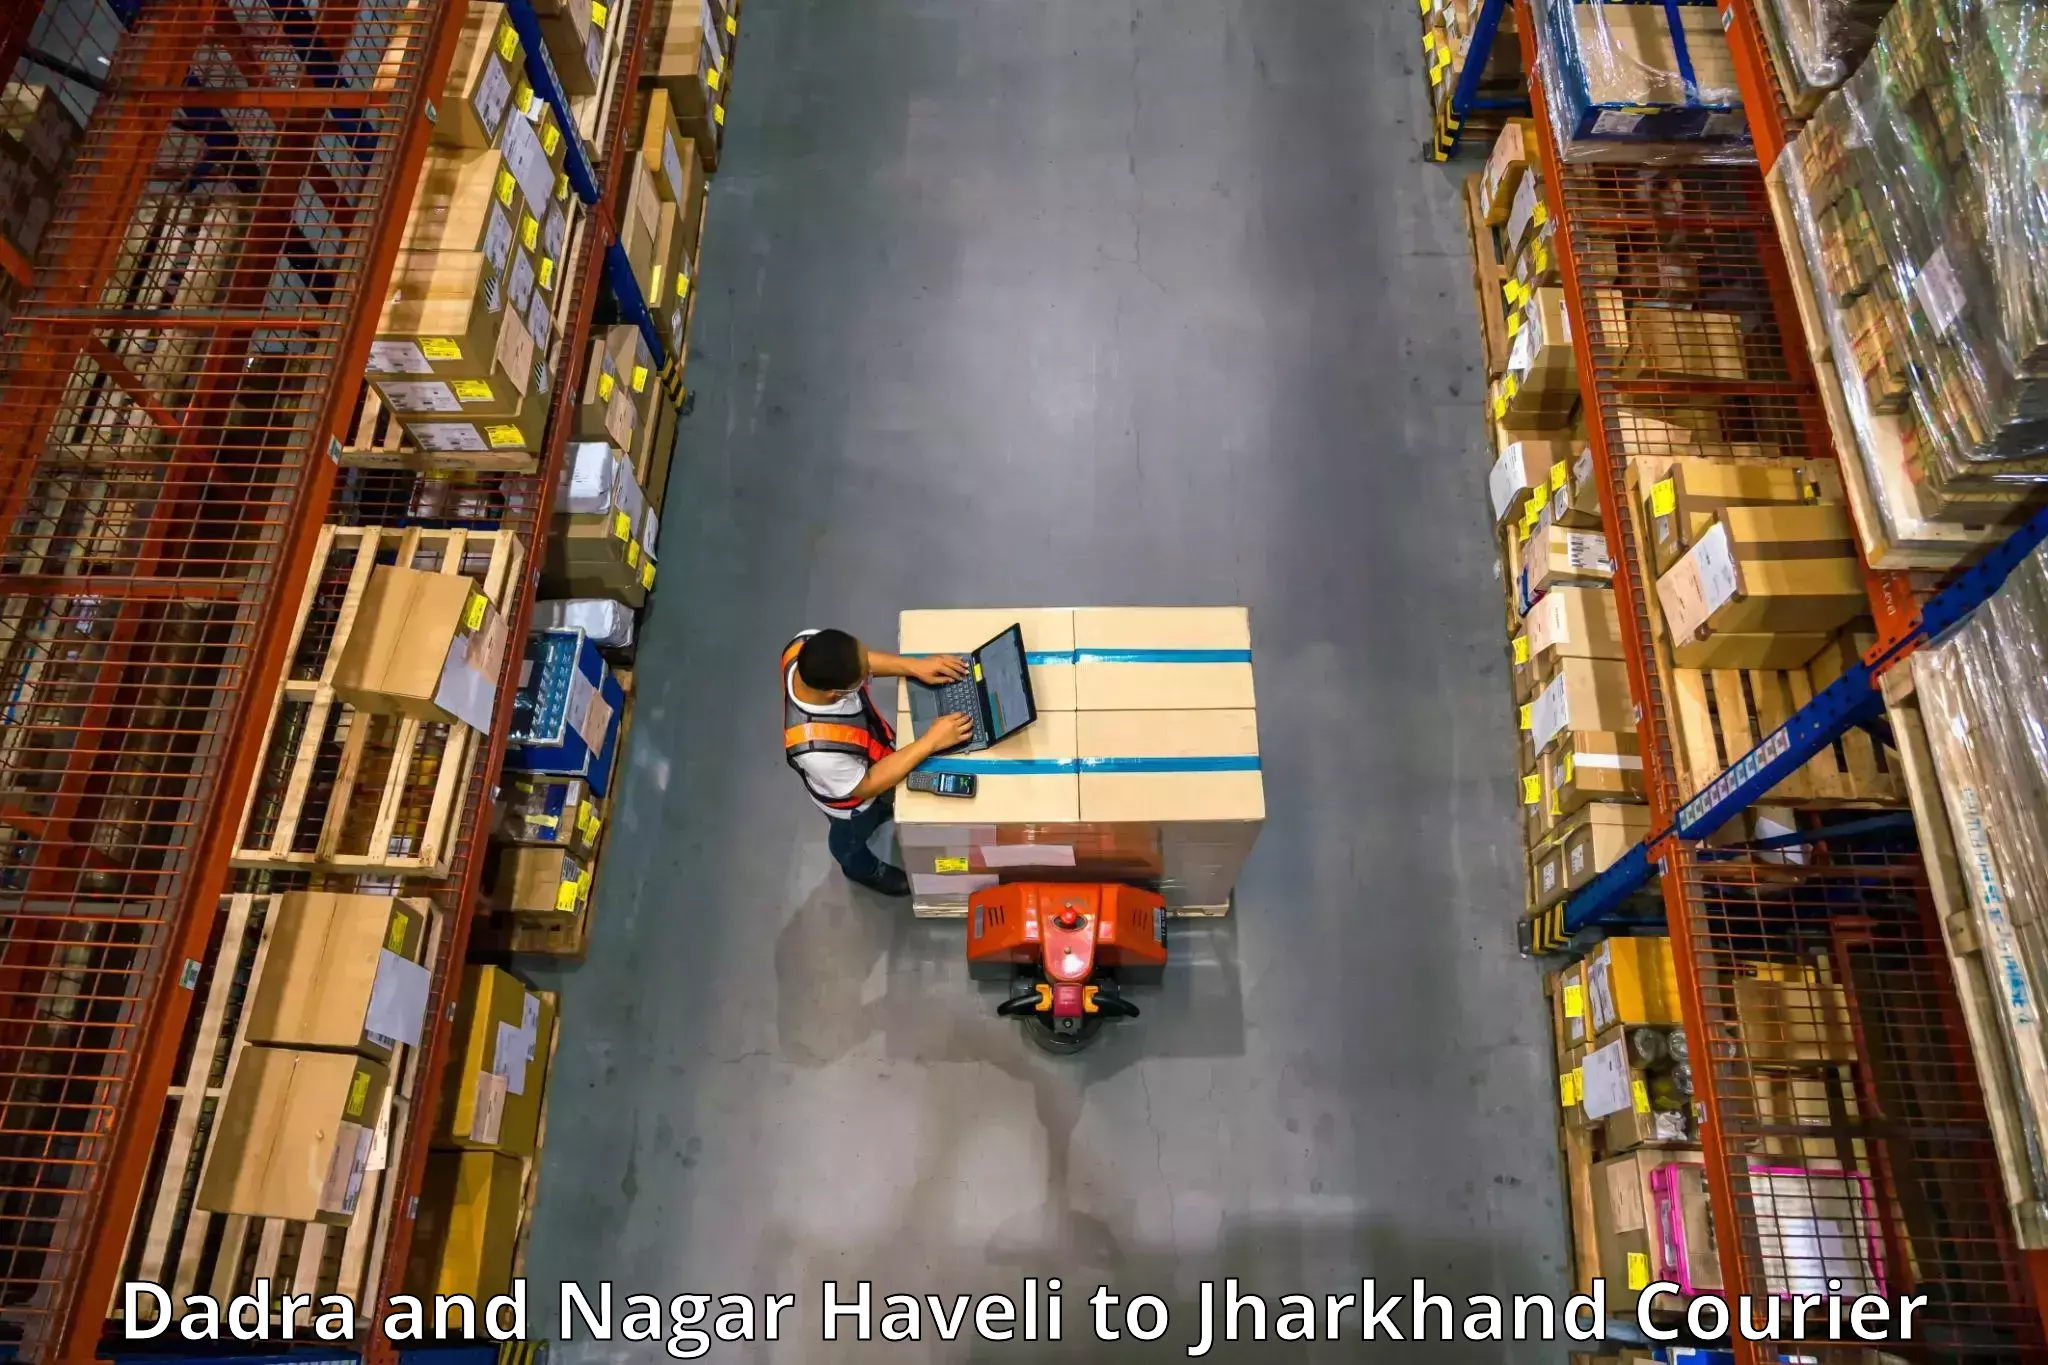 Furniture transport experts Dadra and Nagar Haveli to Barki Saria